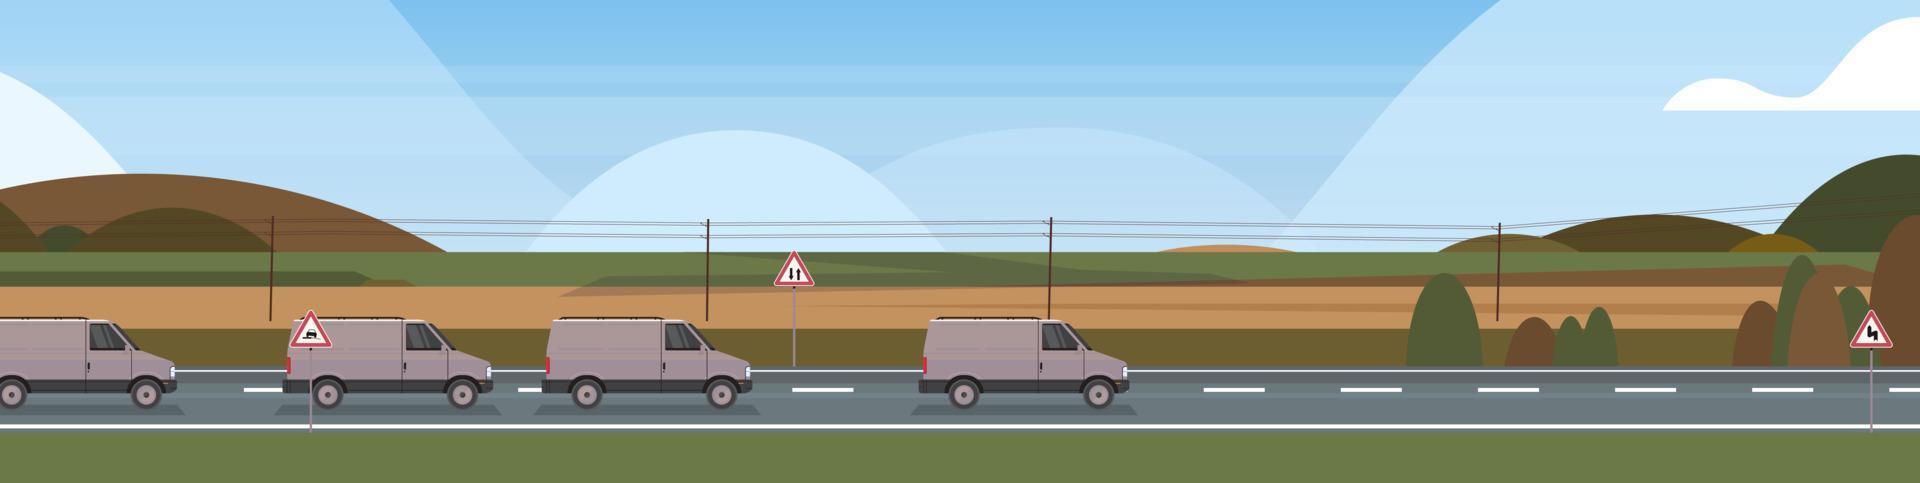 camionnette de fret conduisant sur la route au-dessus des montagnes concept de paysage illustration vectorielle plane horizontale. vecteur